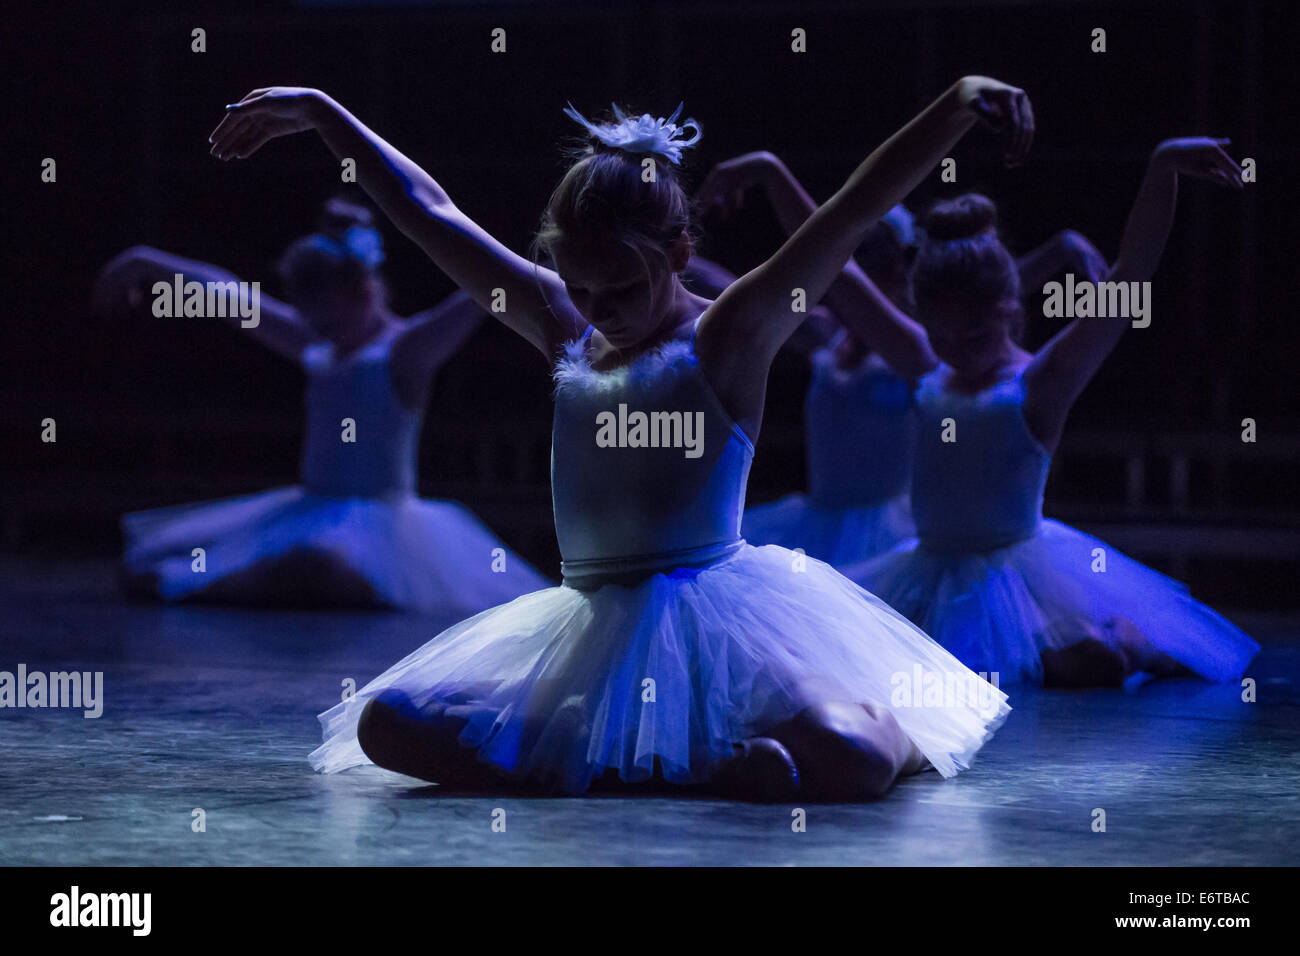 Le Lac des cygnes ballet. Théâtre d'une photo de cette célèbre ballet effectué par de jeunes étudiants d'une école de danse. Banque D'Images